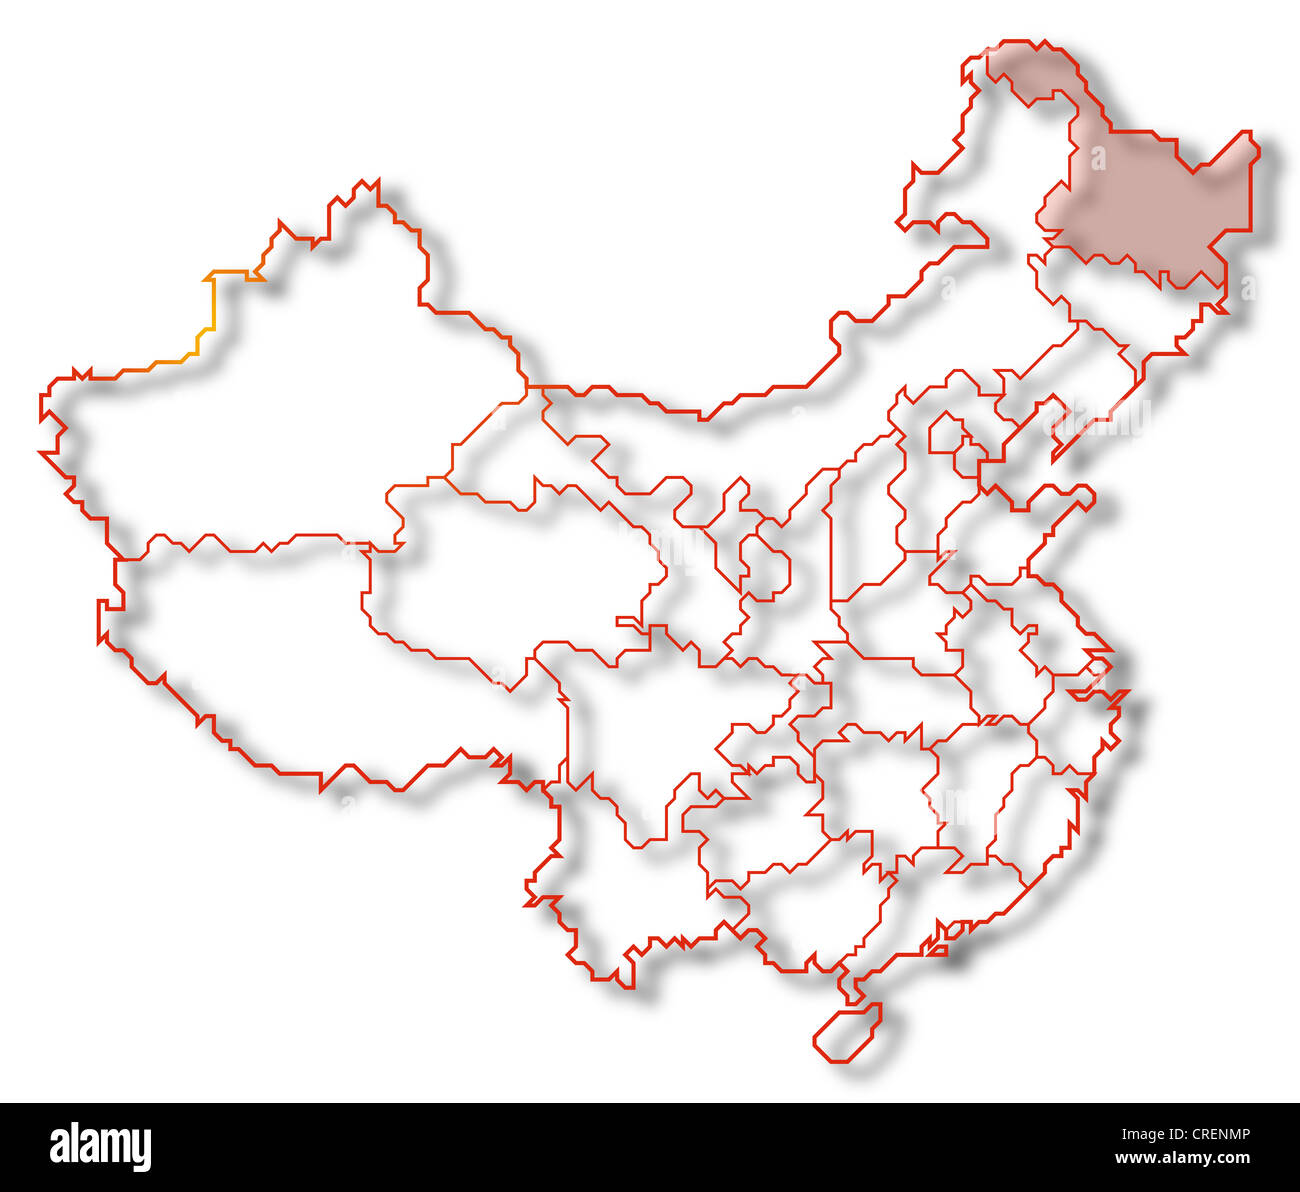 Mappa politica della Cina con le diverse province dove Heilongjiang è evidenziata. Foto Stock